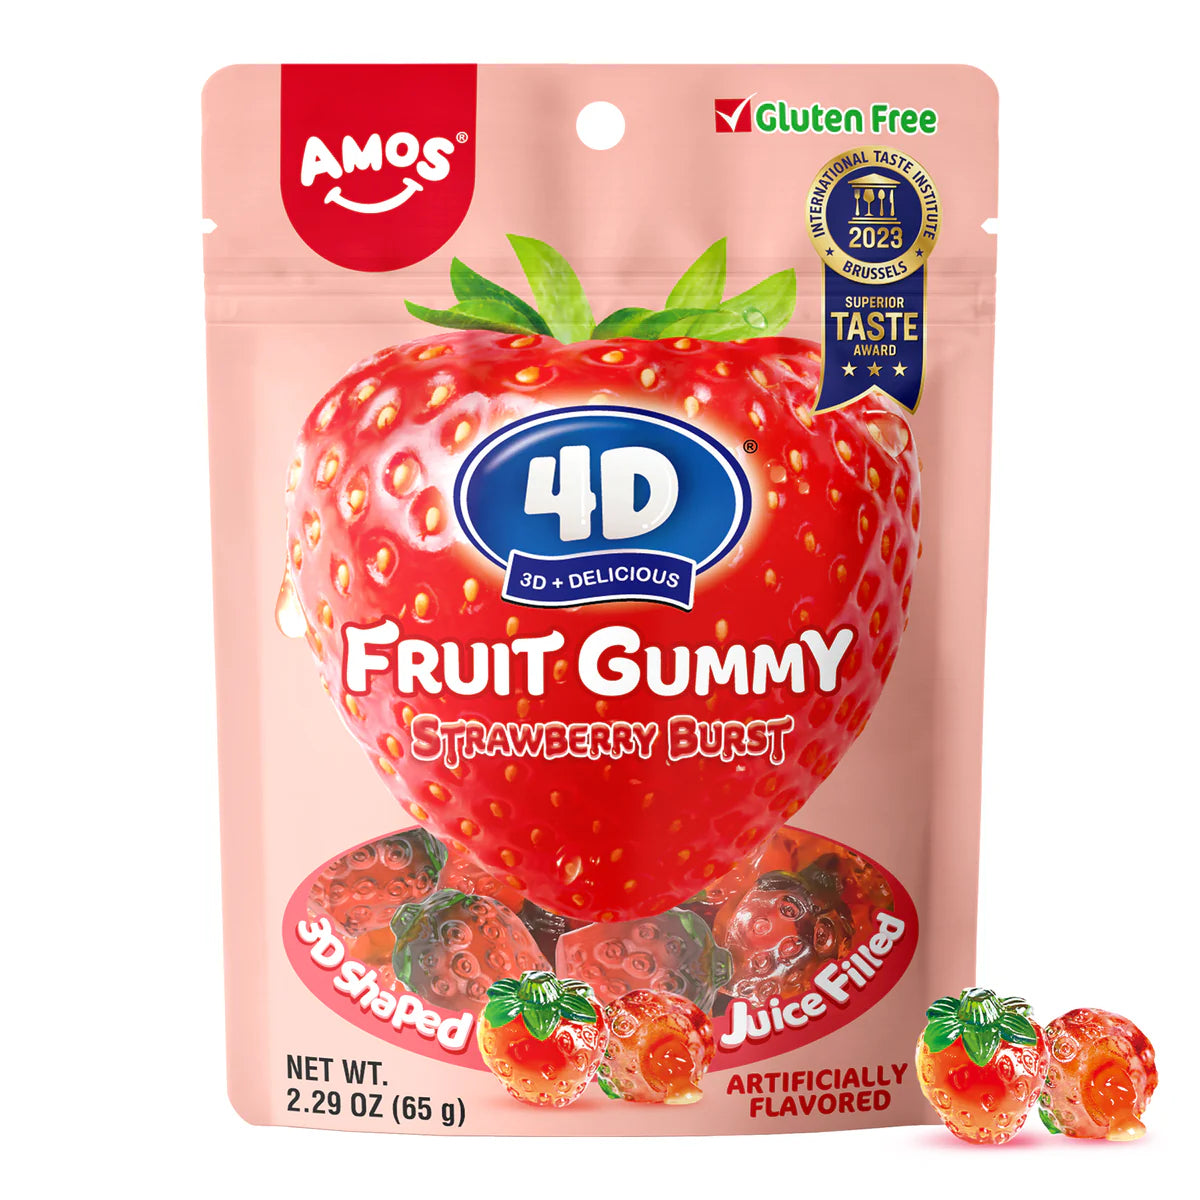 4D Fruit Gummy Strawberry Burst